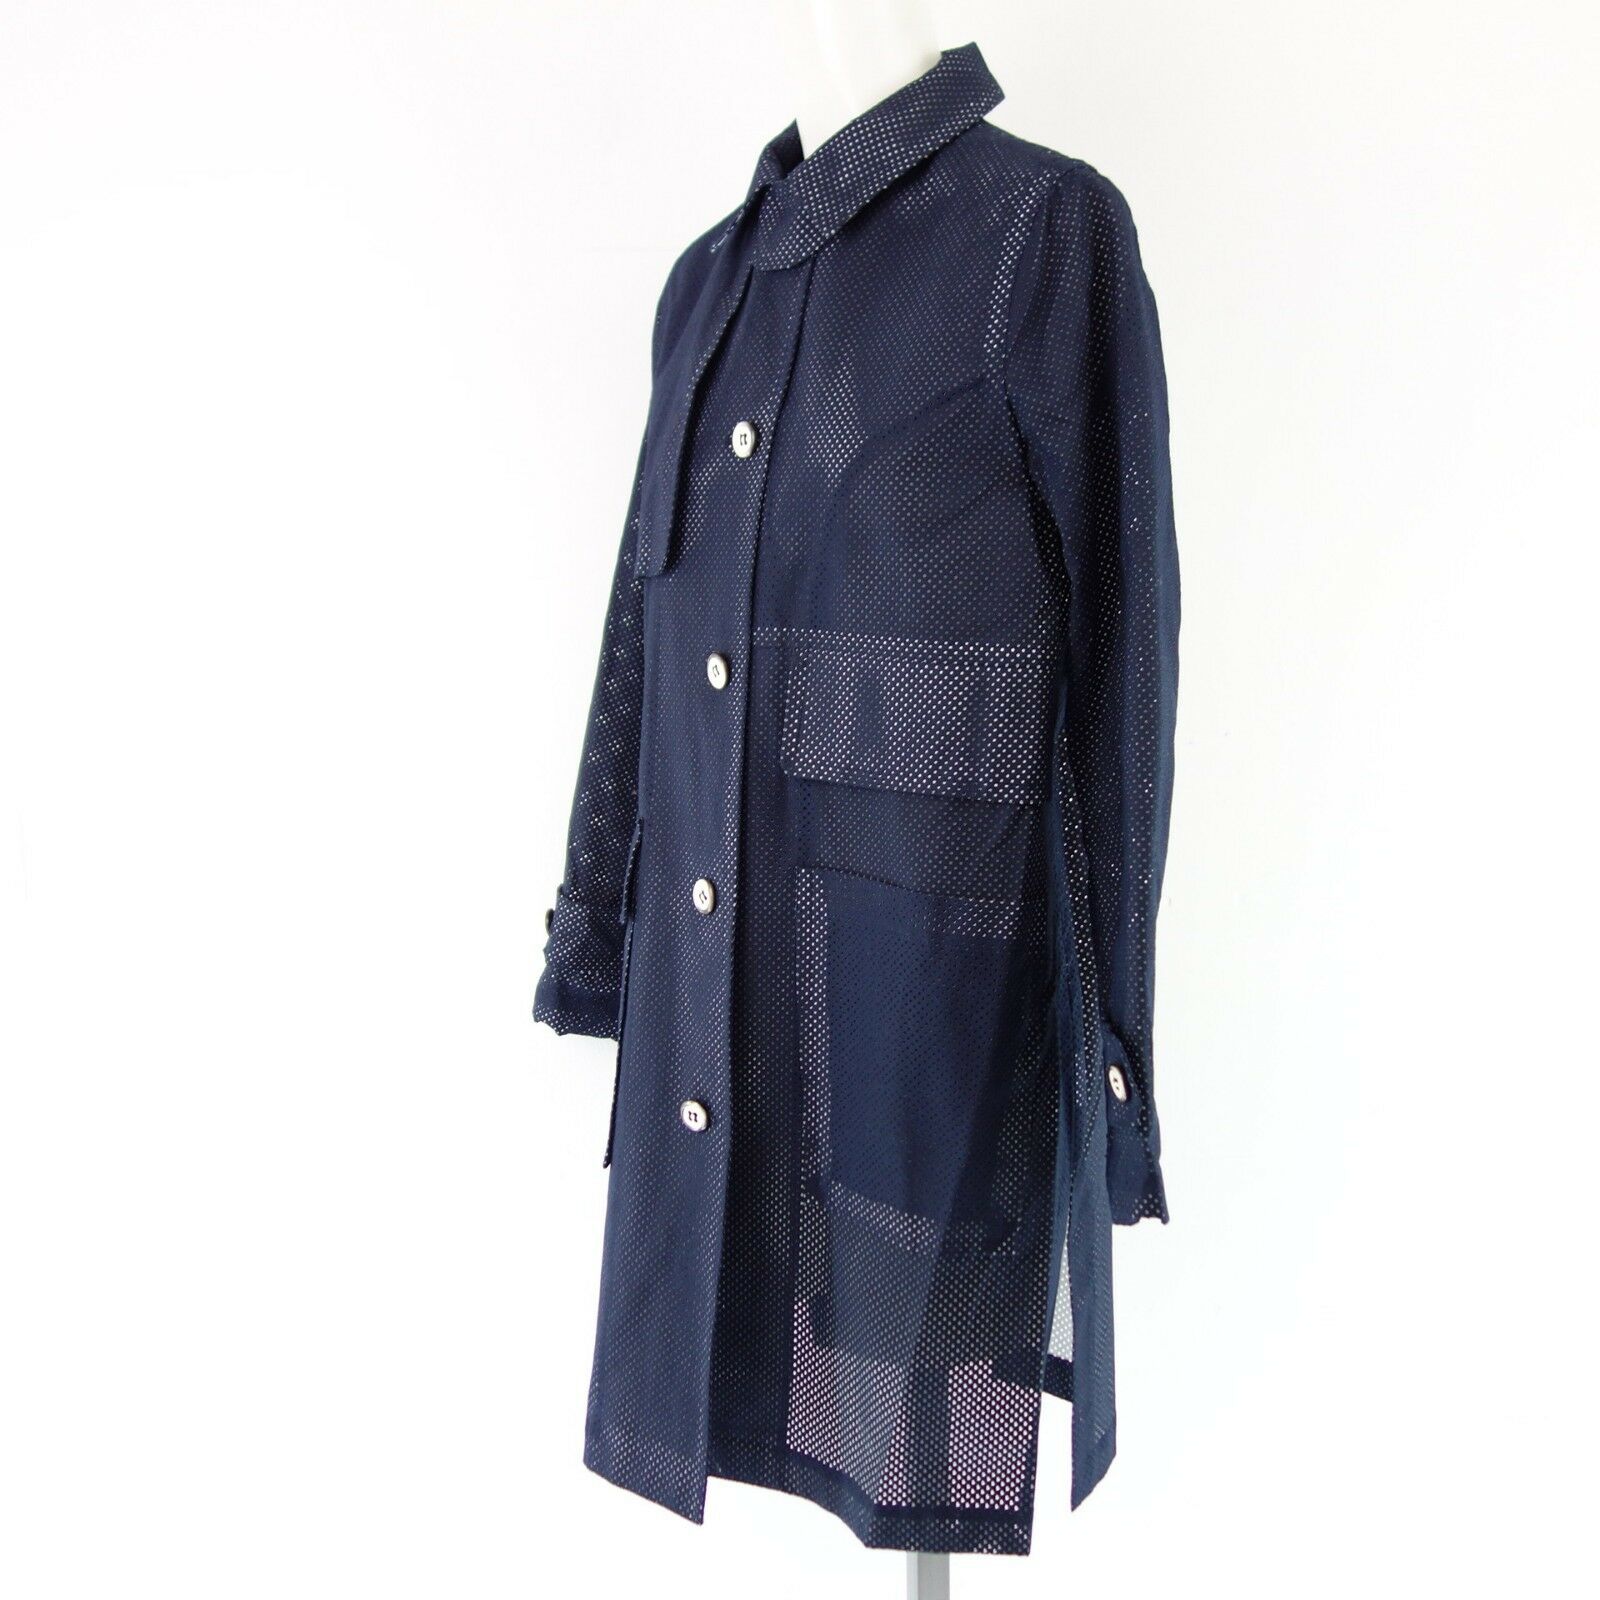 Lener Damen Duster Coat Mantel Größe 34 XS Blau Baumwolle Lochmuster Np 419 Neu